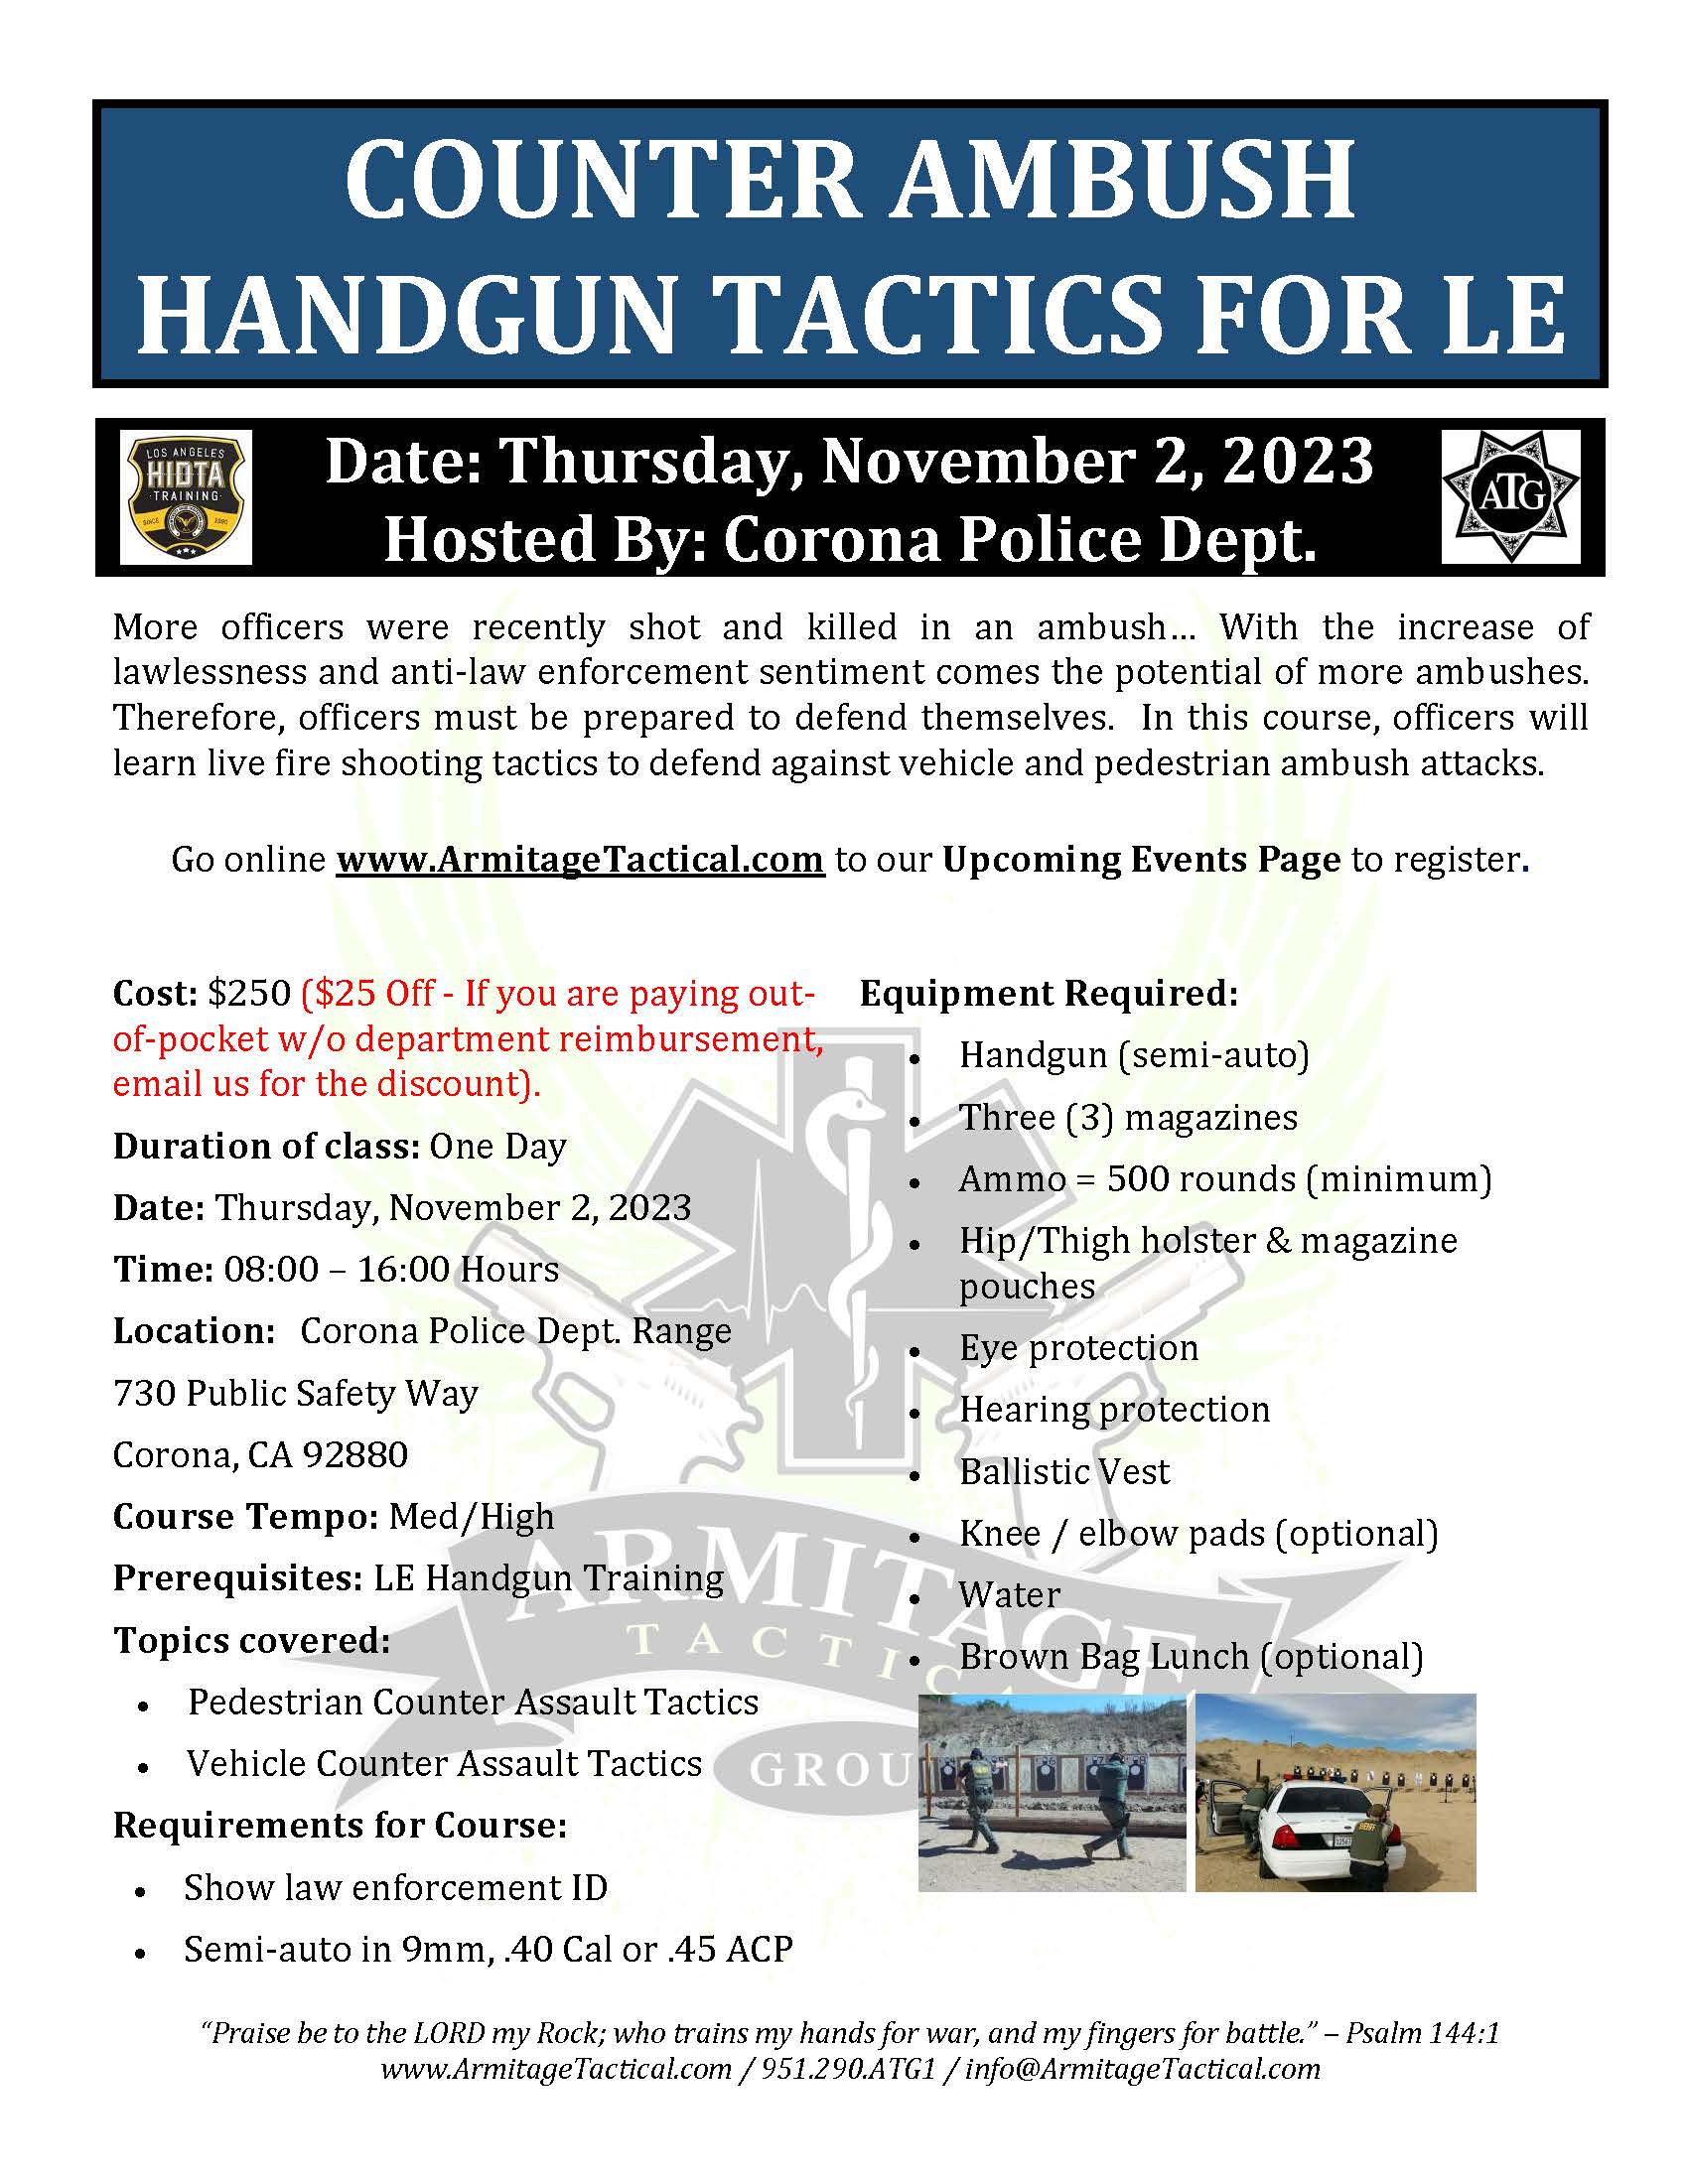 2023/11/03 - Counter Ambush Handgun Tactics for LE/Mil - Corona, CA